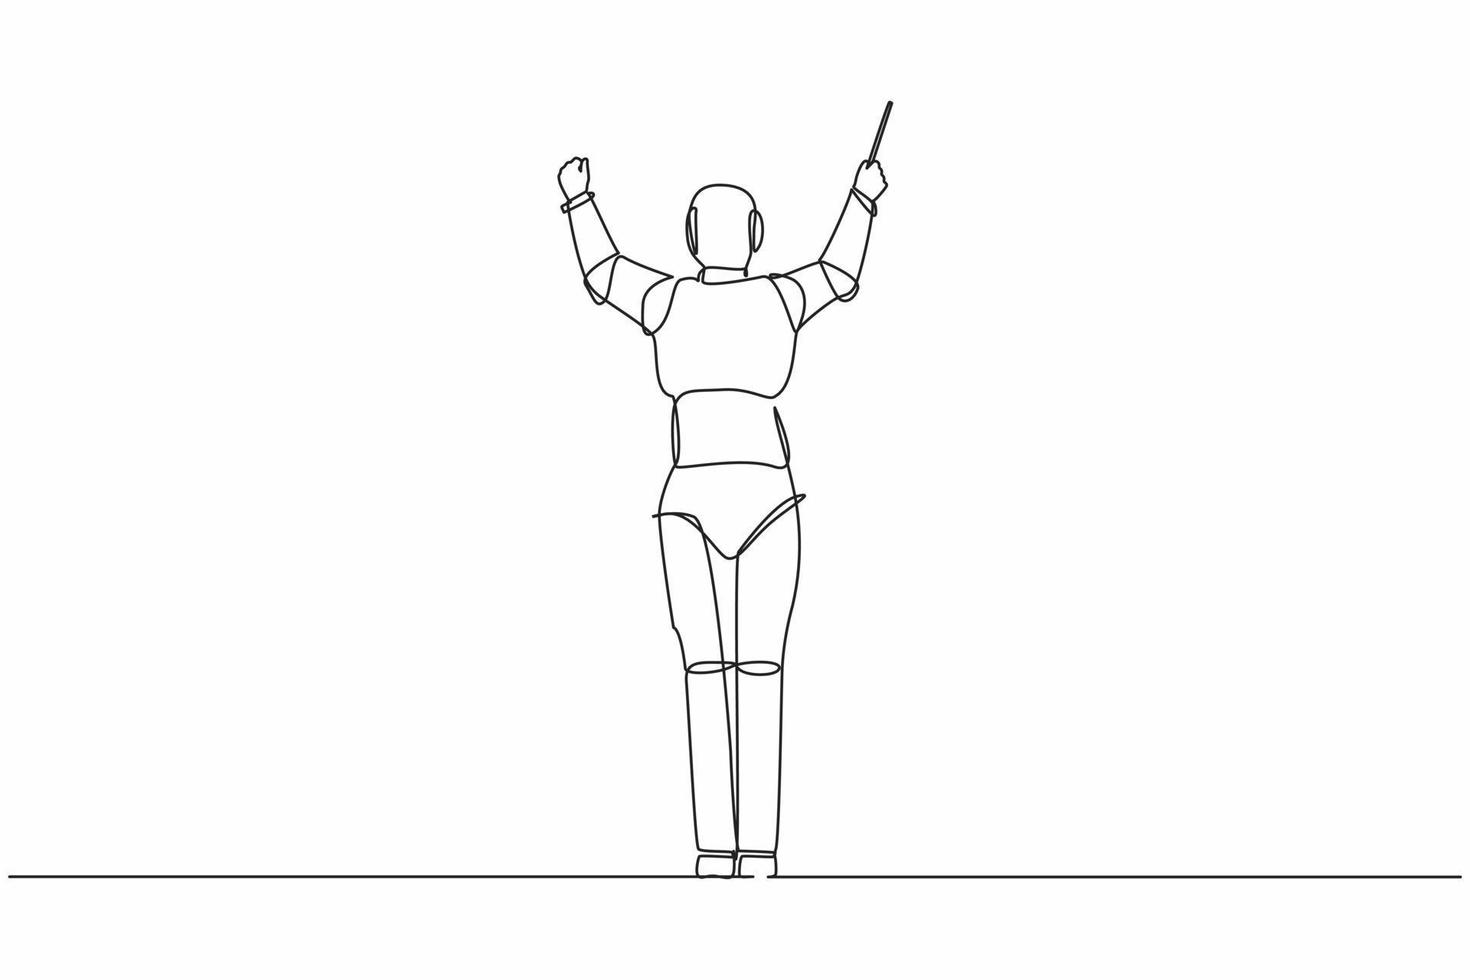 una línea continua dibujando la vista posterior del conductor del robot actuando en el escenario, dirigiendo la orquesta sinfónica. organismo cibernético robot humanoide. ilustración gráfica de vector de diseño de dibujo de una sola línea